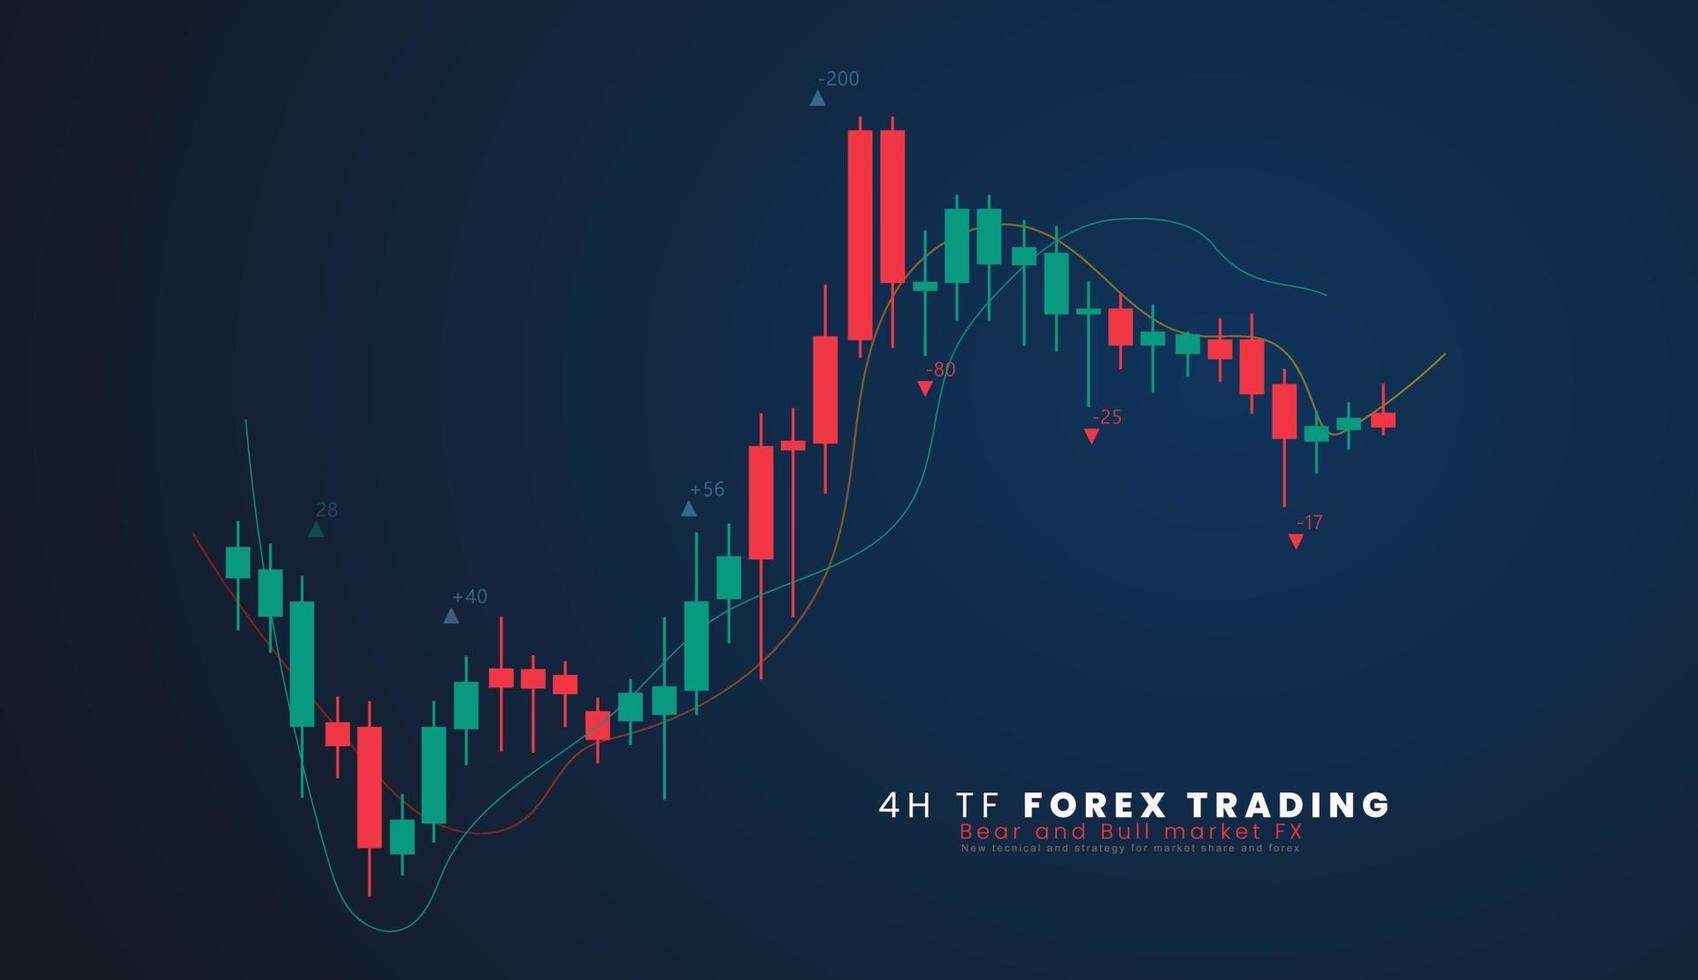 4h tf valores mercado o forex comercio candelero grafico en gráfico diseño para financiero inversión concepto vector ilustración